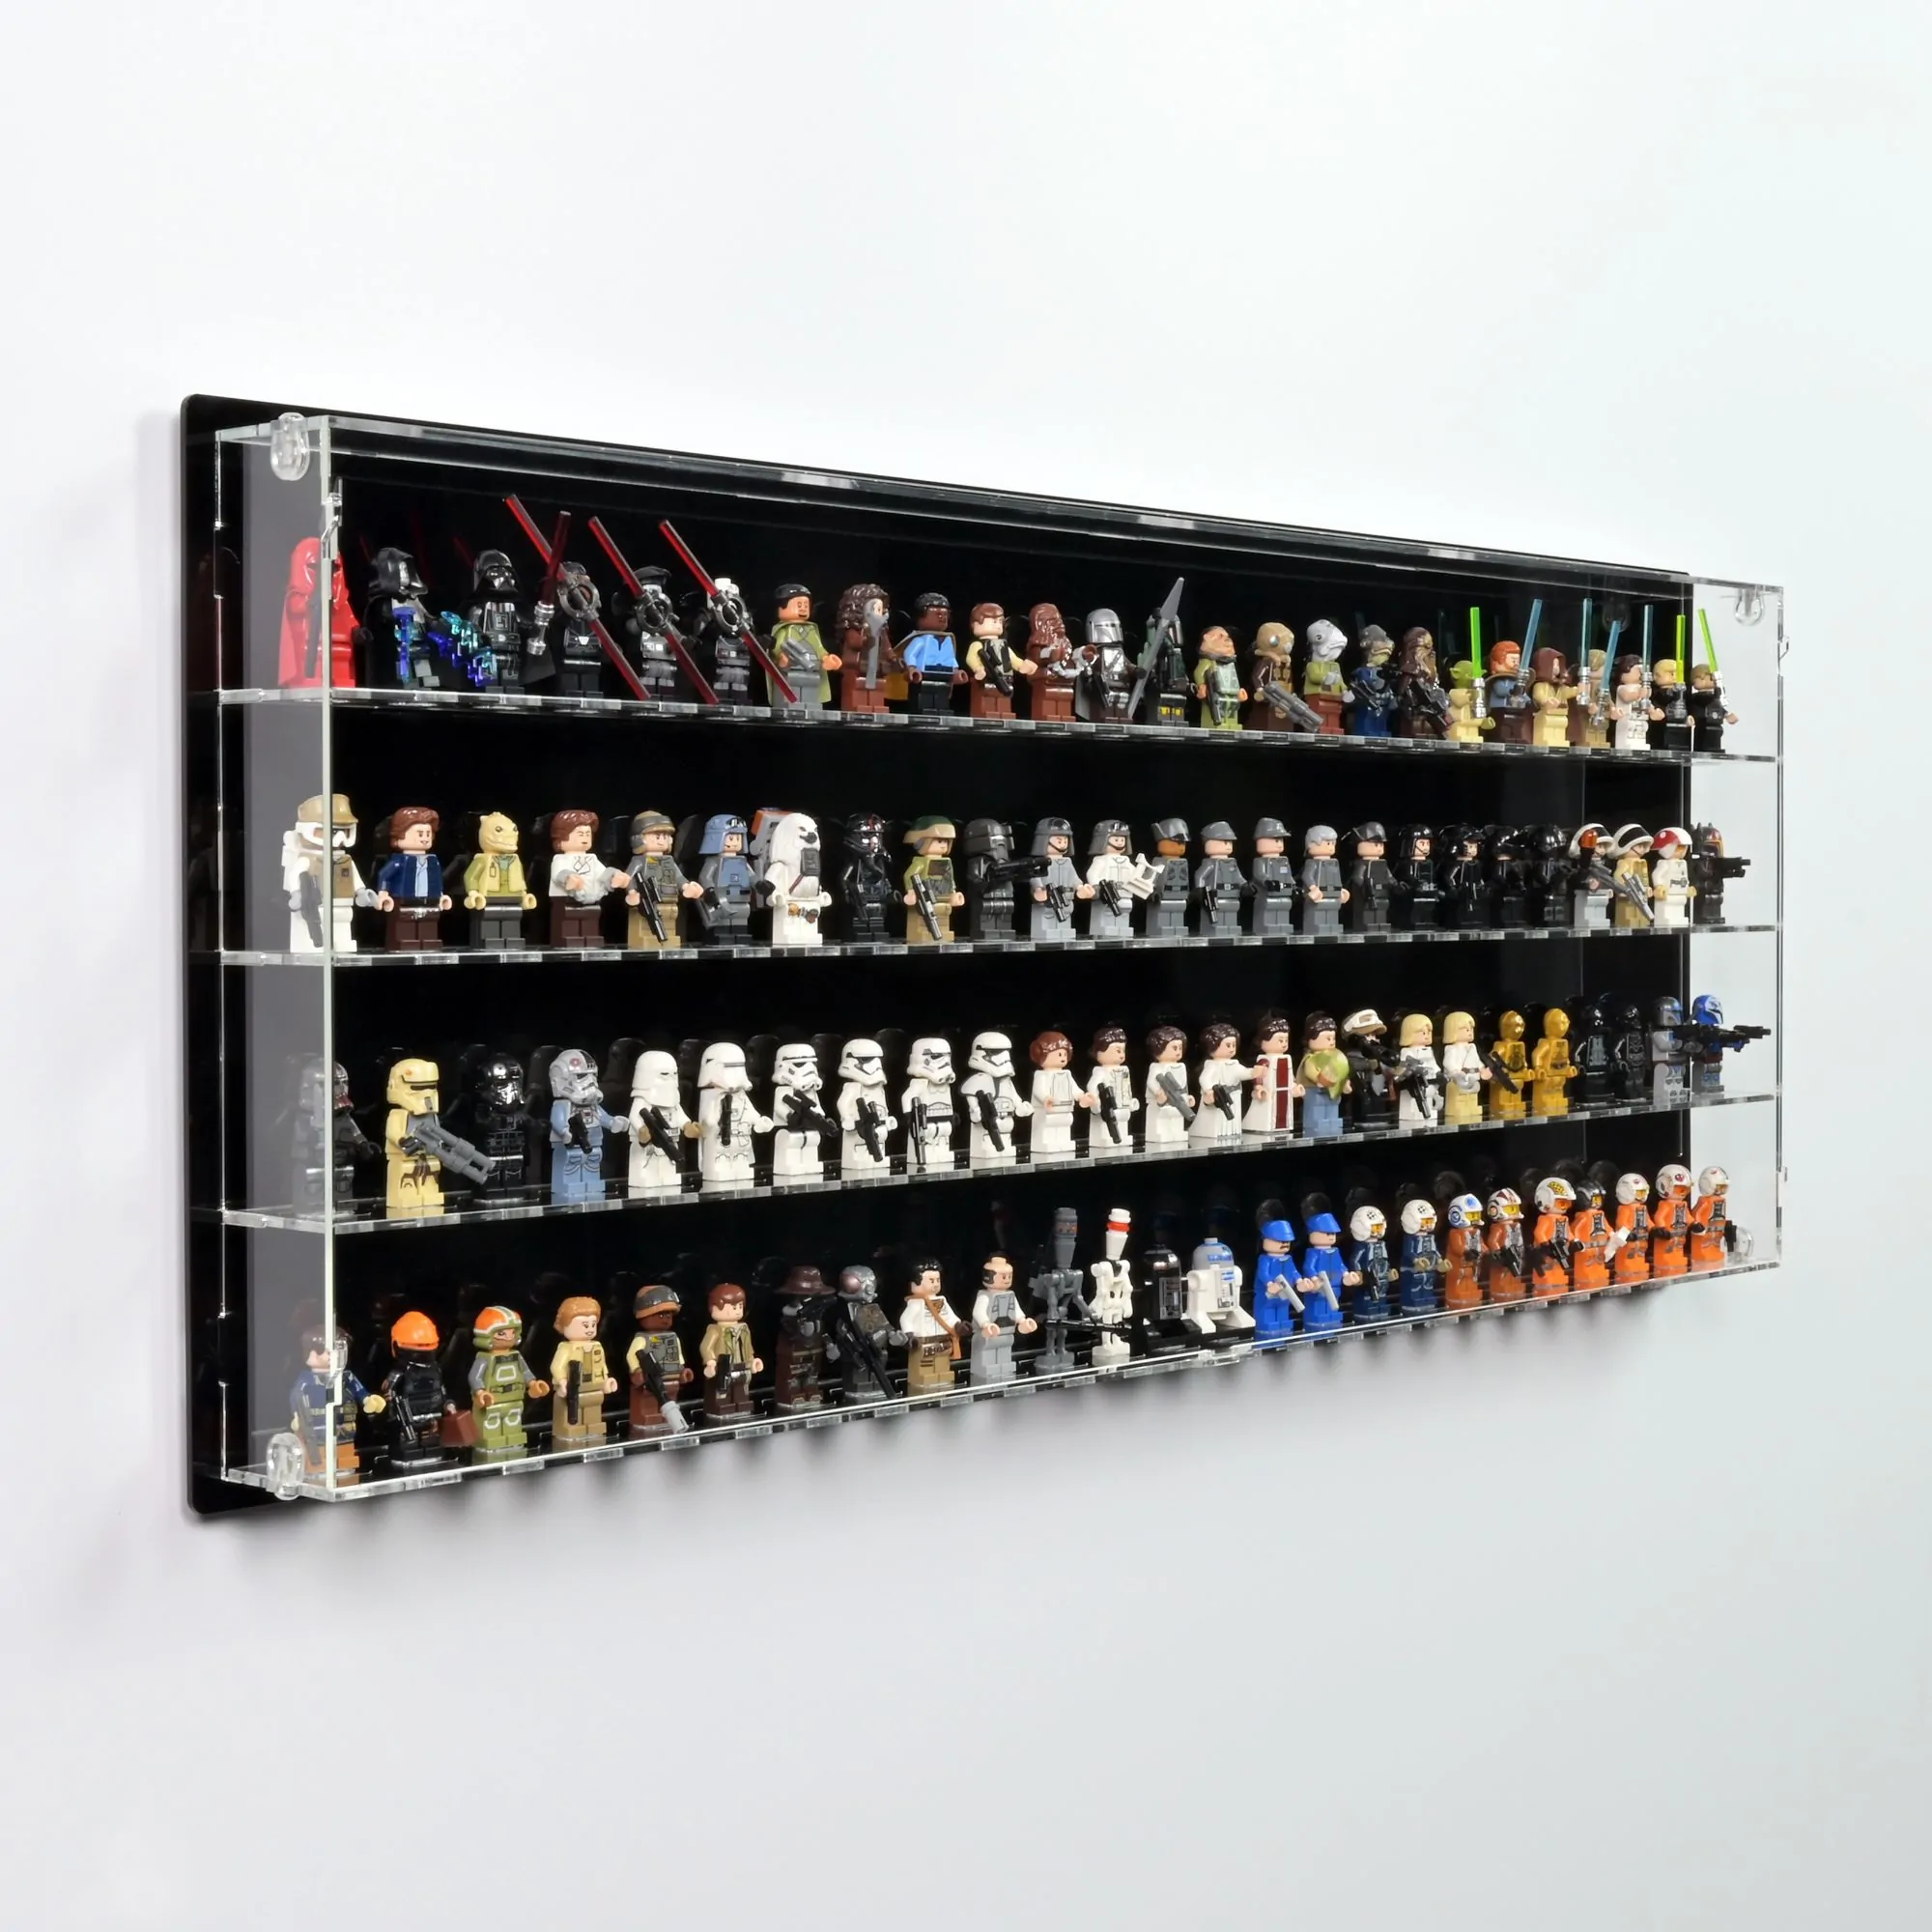 Hand-made display cabinets acrylic display cabinets Lego display